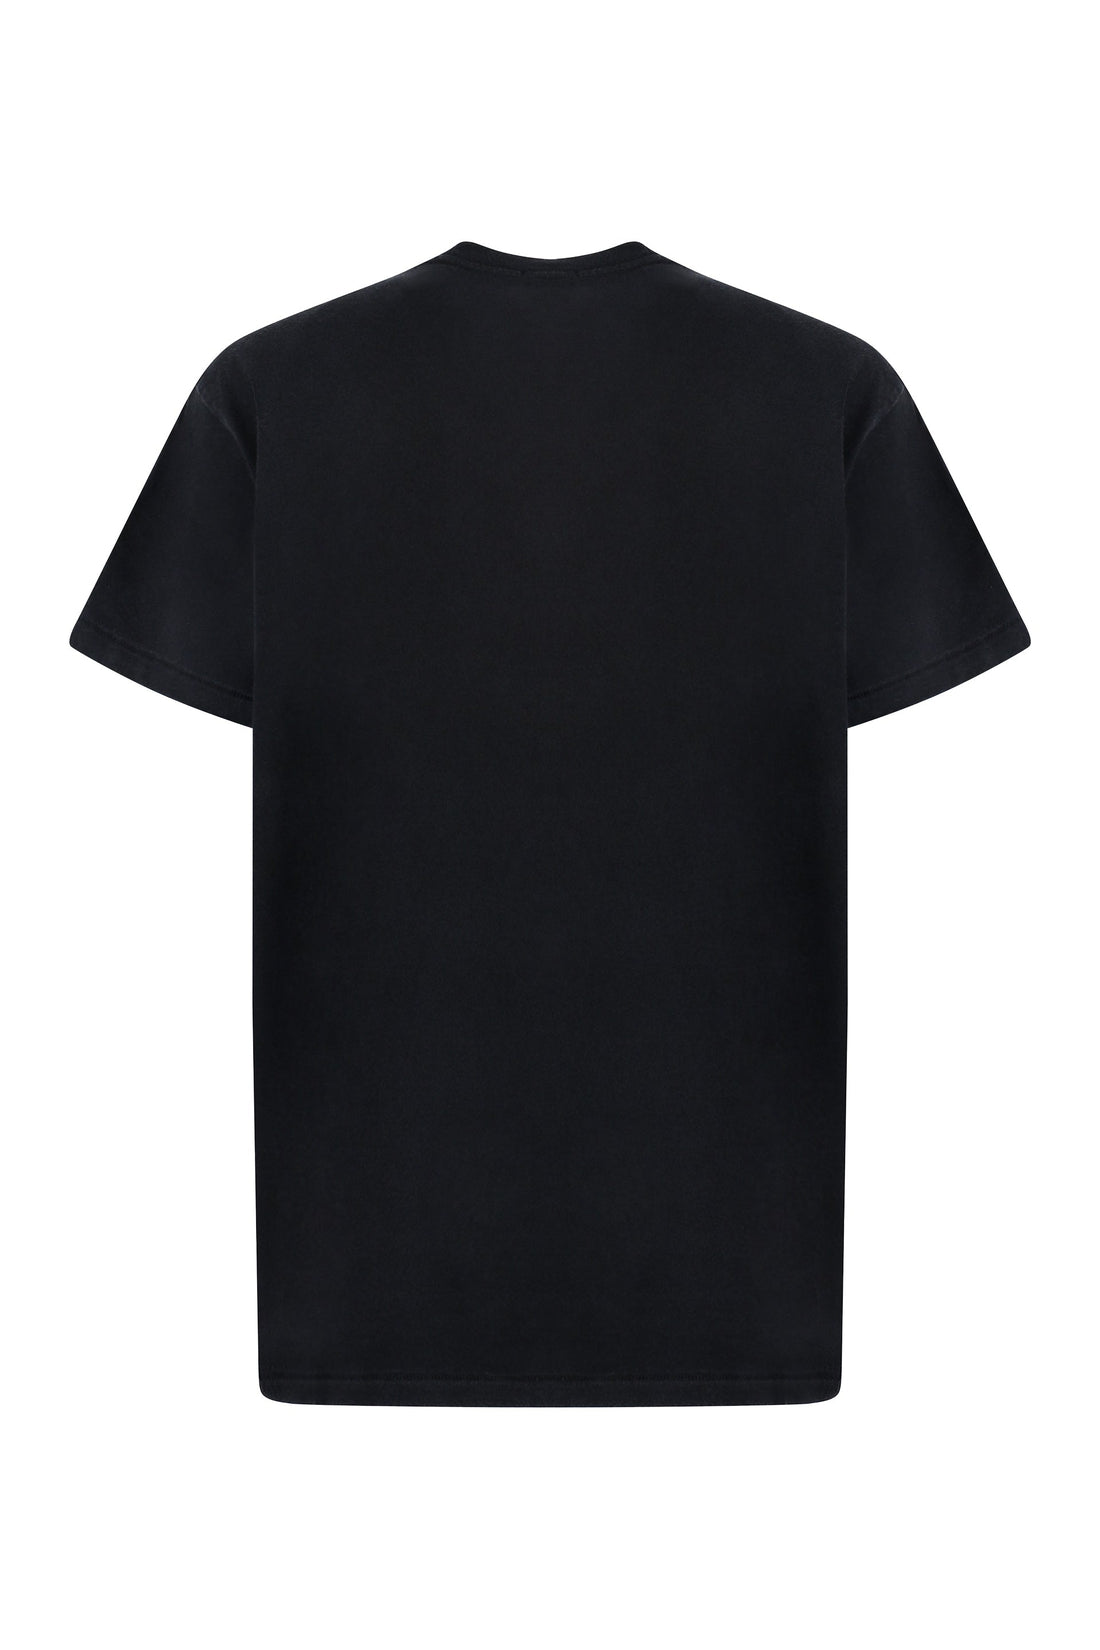 R13-OUTLET-SALE-Boy cotton T-shirt-ARCHIVIST